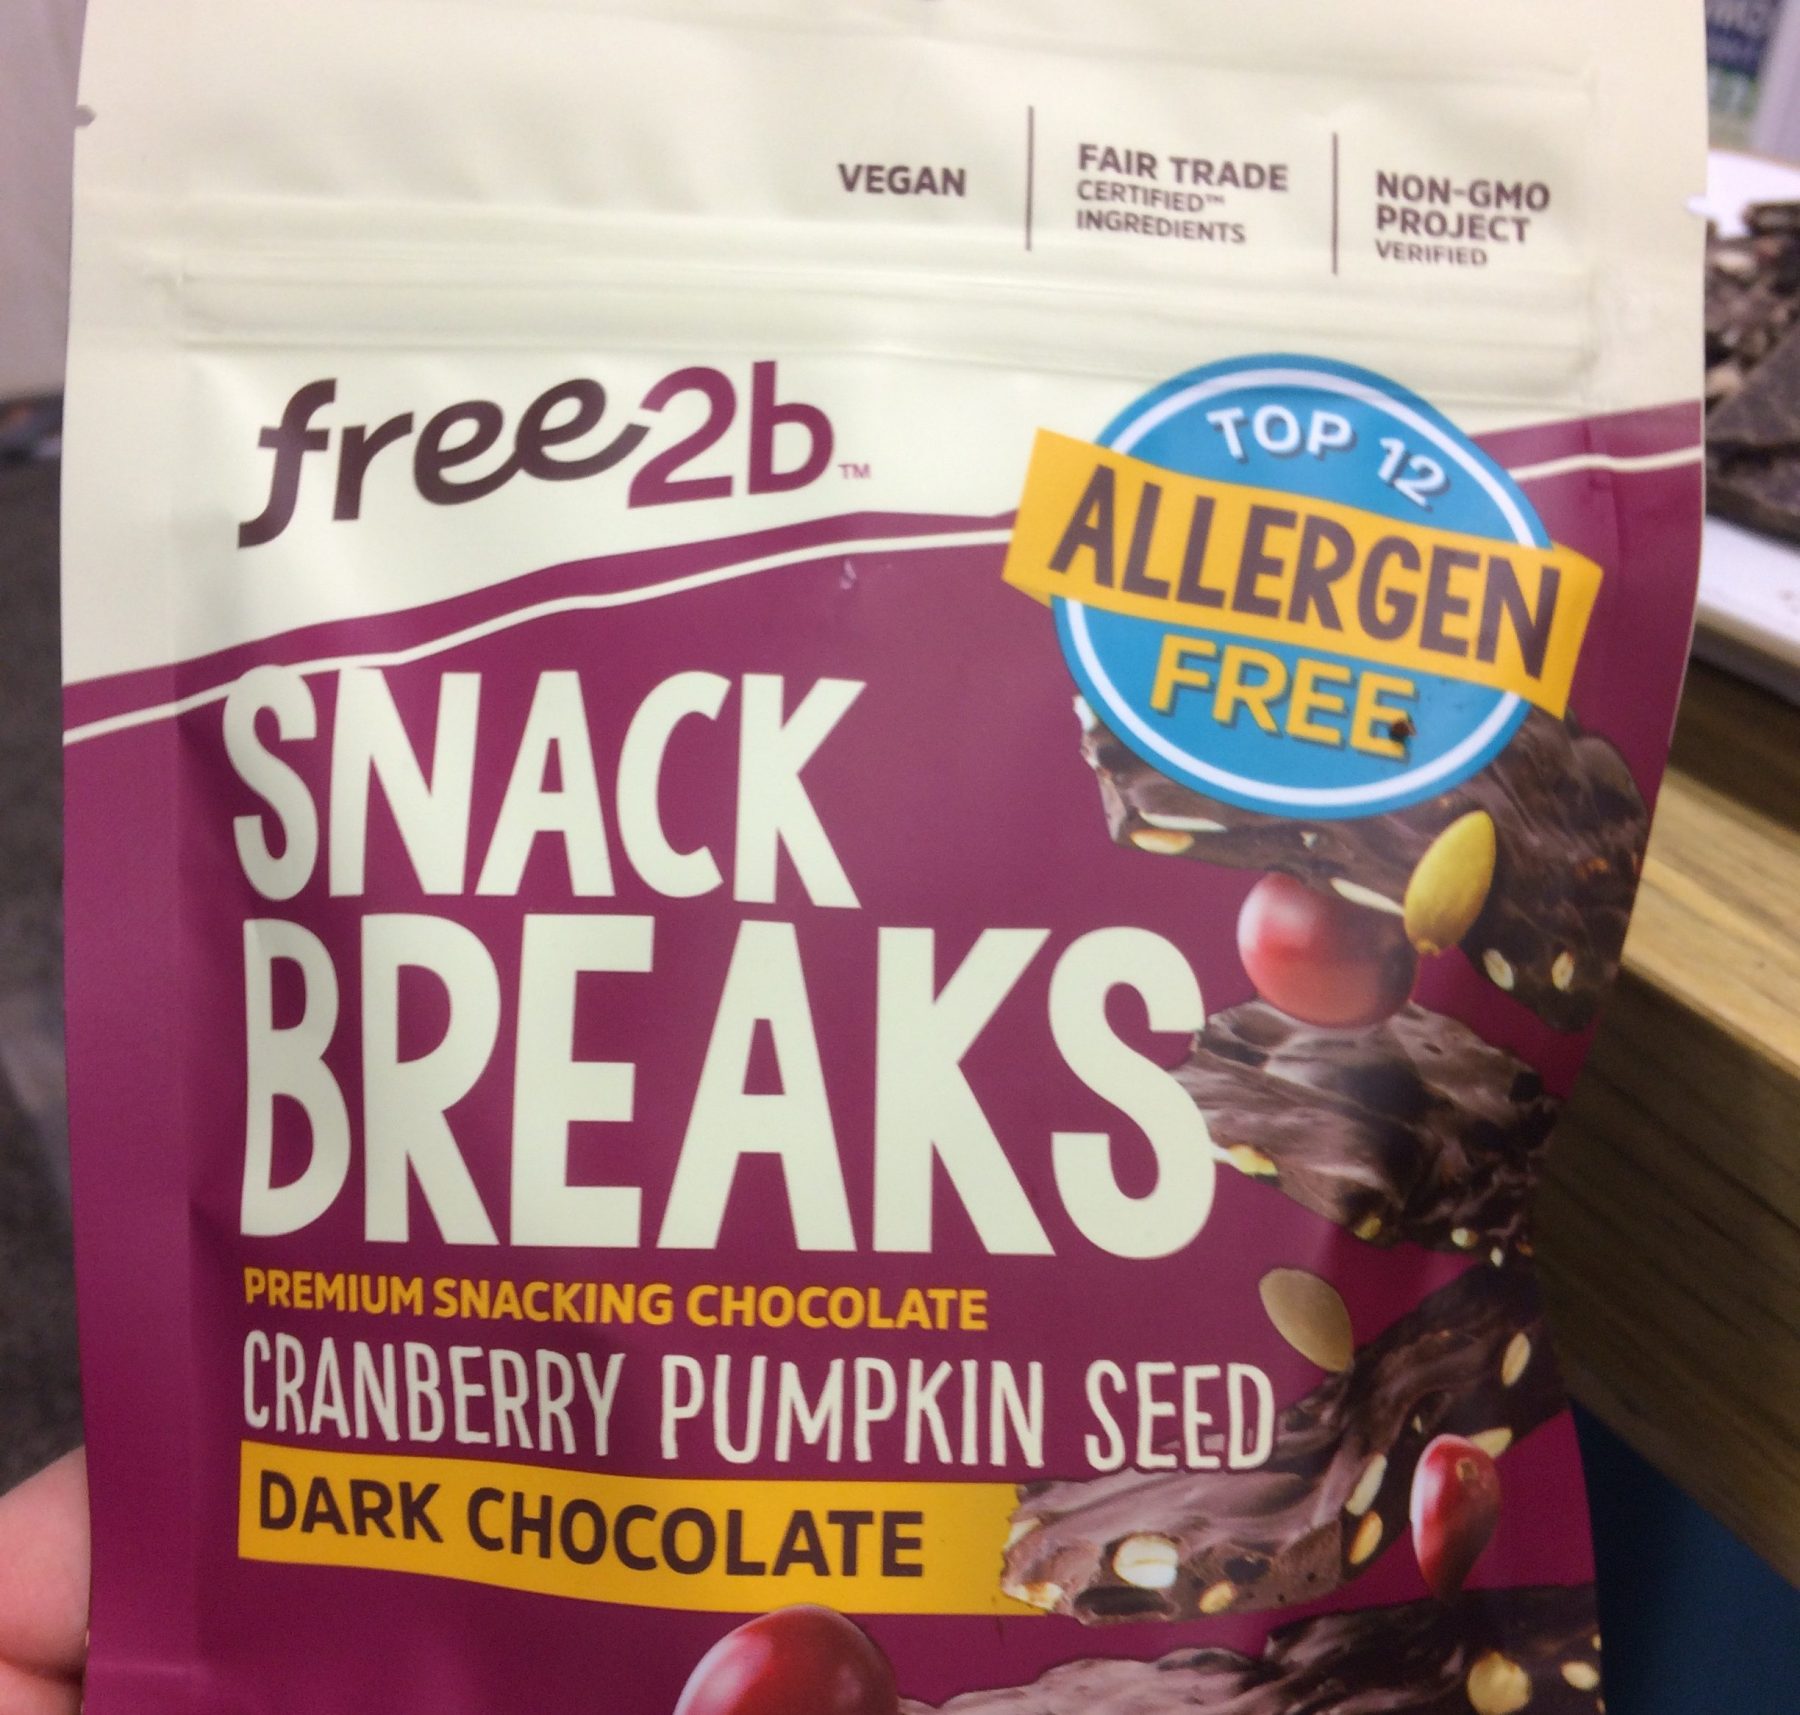 Free2b Foods Snack Breaks – Vegan Snacking Chocolate